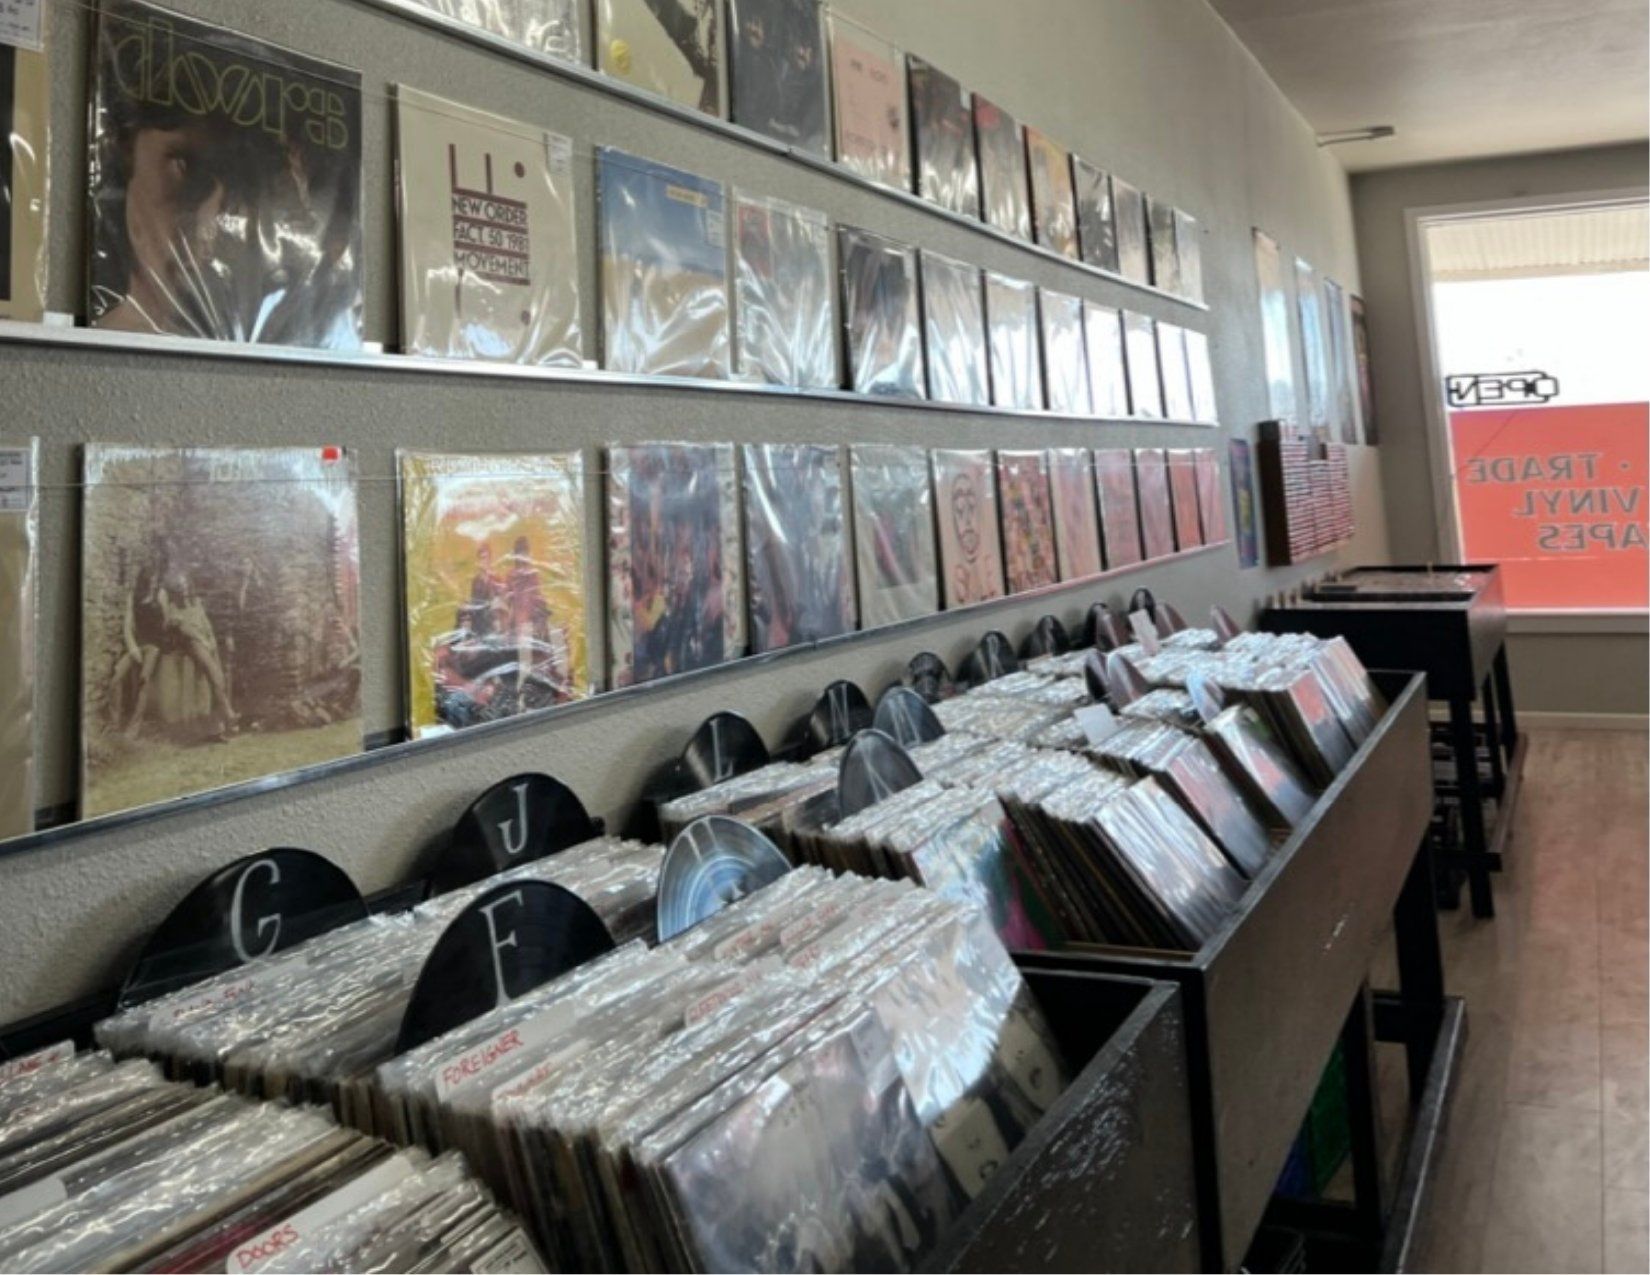 Many classic vinyl records on display at shady grove records in Kingman Arizona